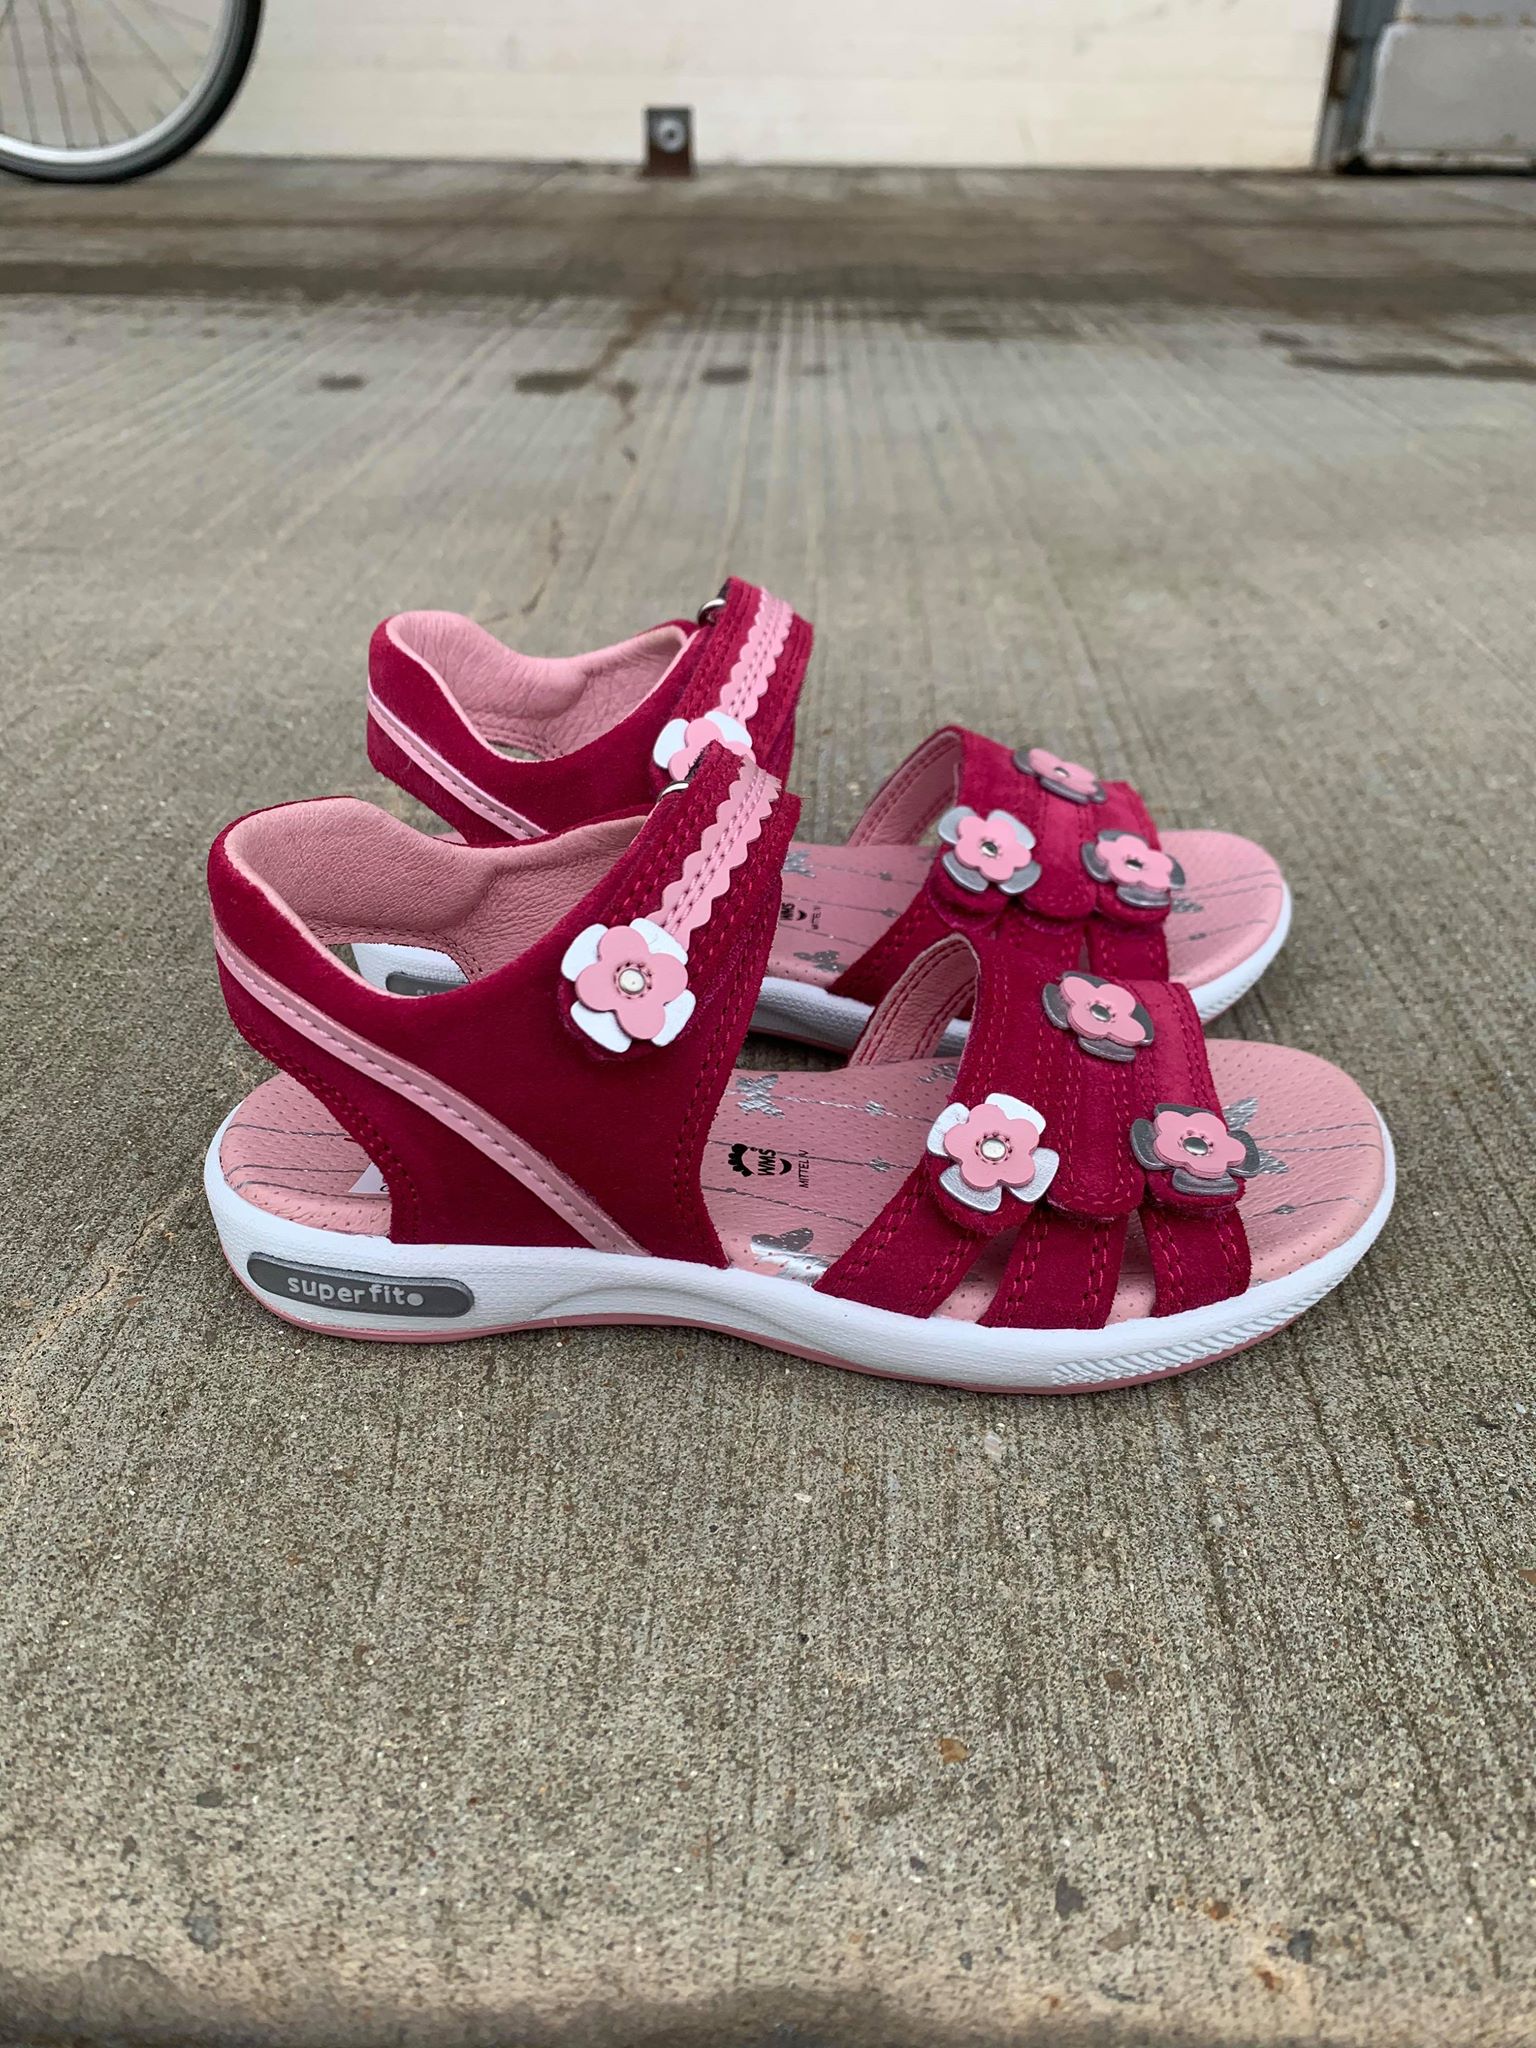 Superfit, Sandaler med - Pink, Børne sandaler med blomster, 4-09133-50 Butik i og Nørresundby – Schou Bertelsen Sko